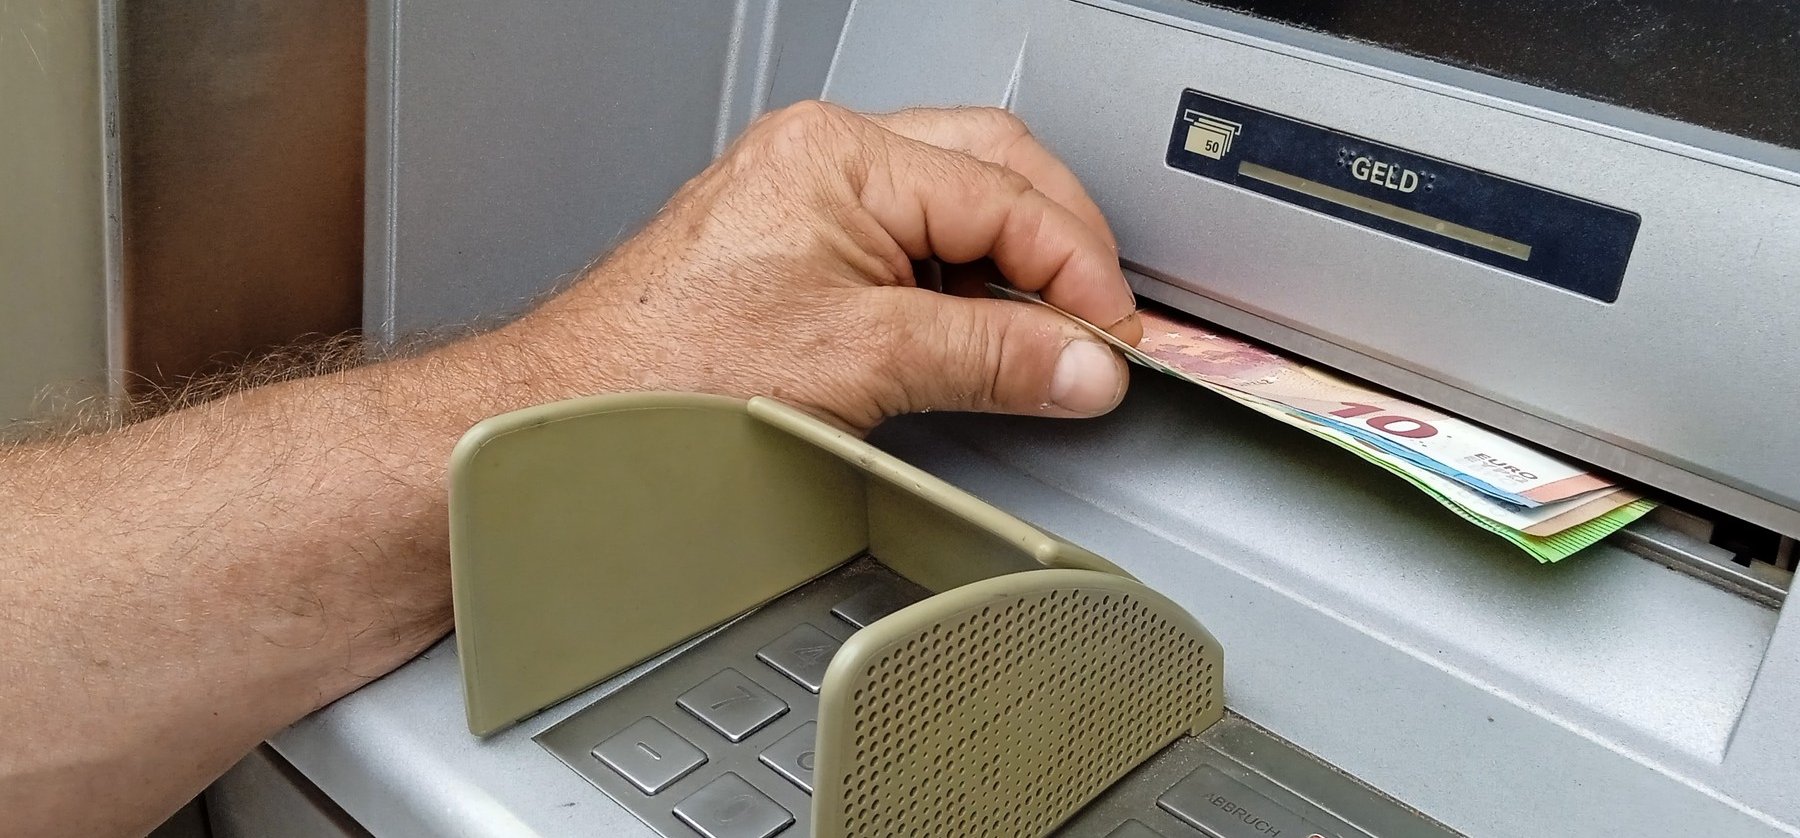 ATM-es csalók vadásznak a pénzünkre: trükkös módszerrel fosztanak ki minket egy pillanat alatt